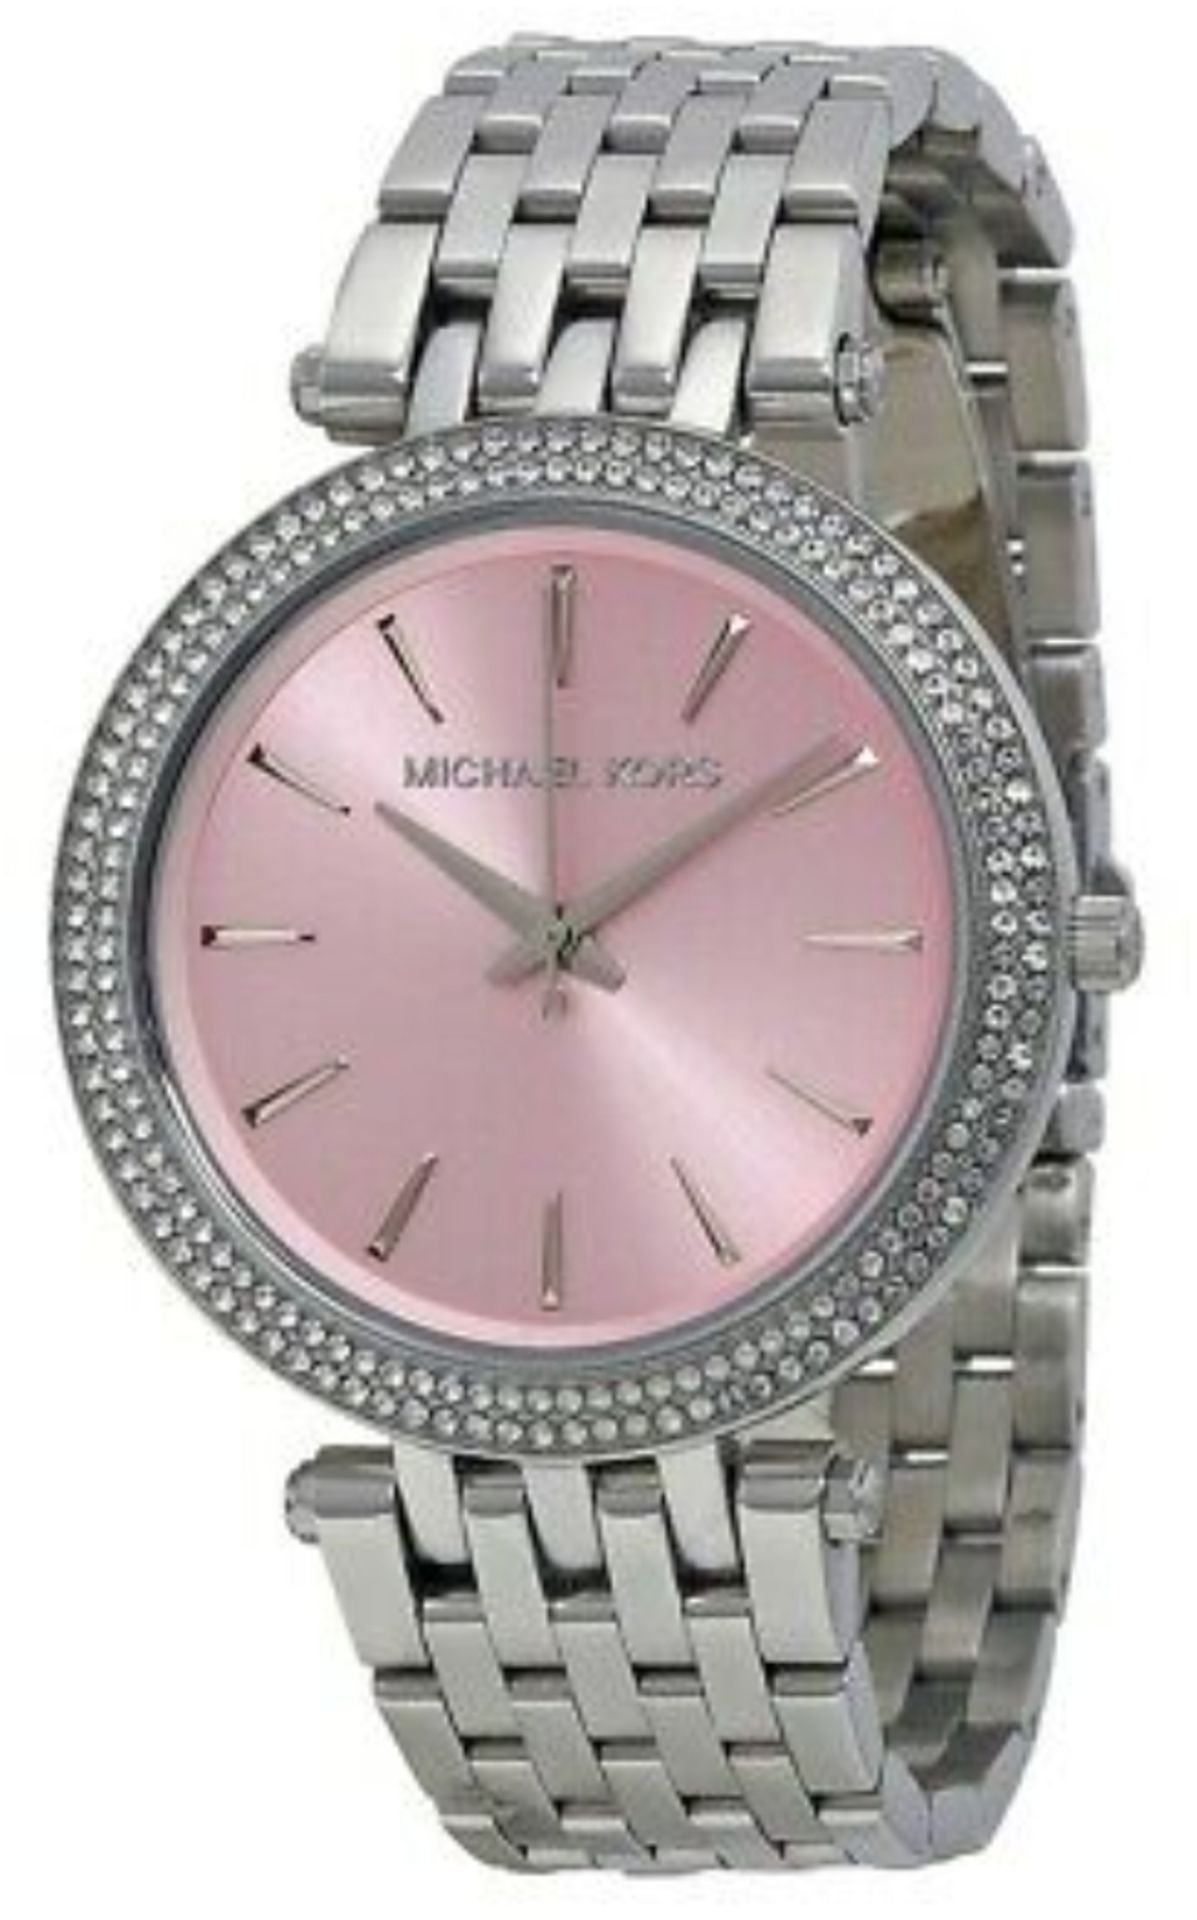 MICHAEL KORS MK3352 Darci Pink & Silver Stainless Steel Ladies Watch - Image 4 of 8